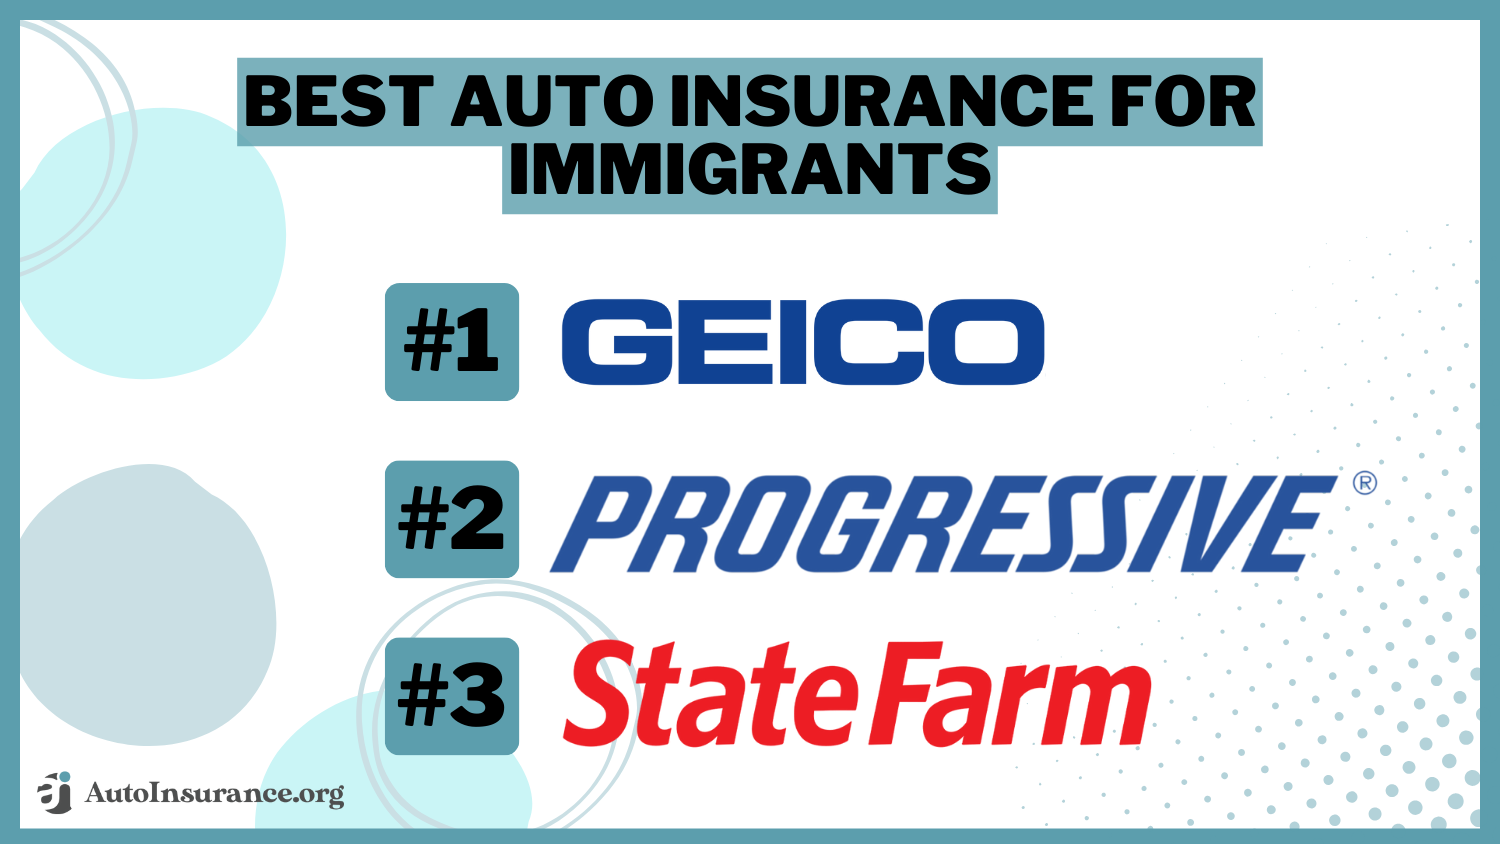 Best Auto Insurance for Immigrants: Geico, Progressive, State Farm